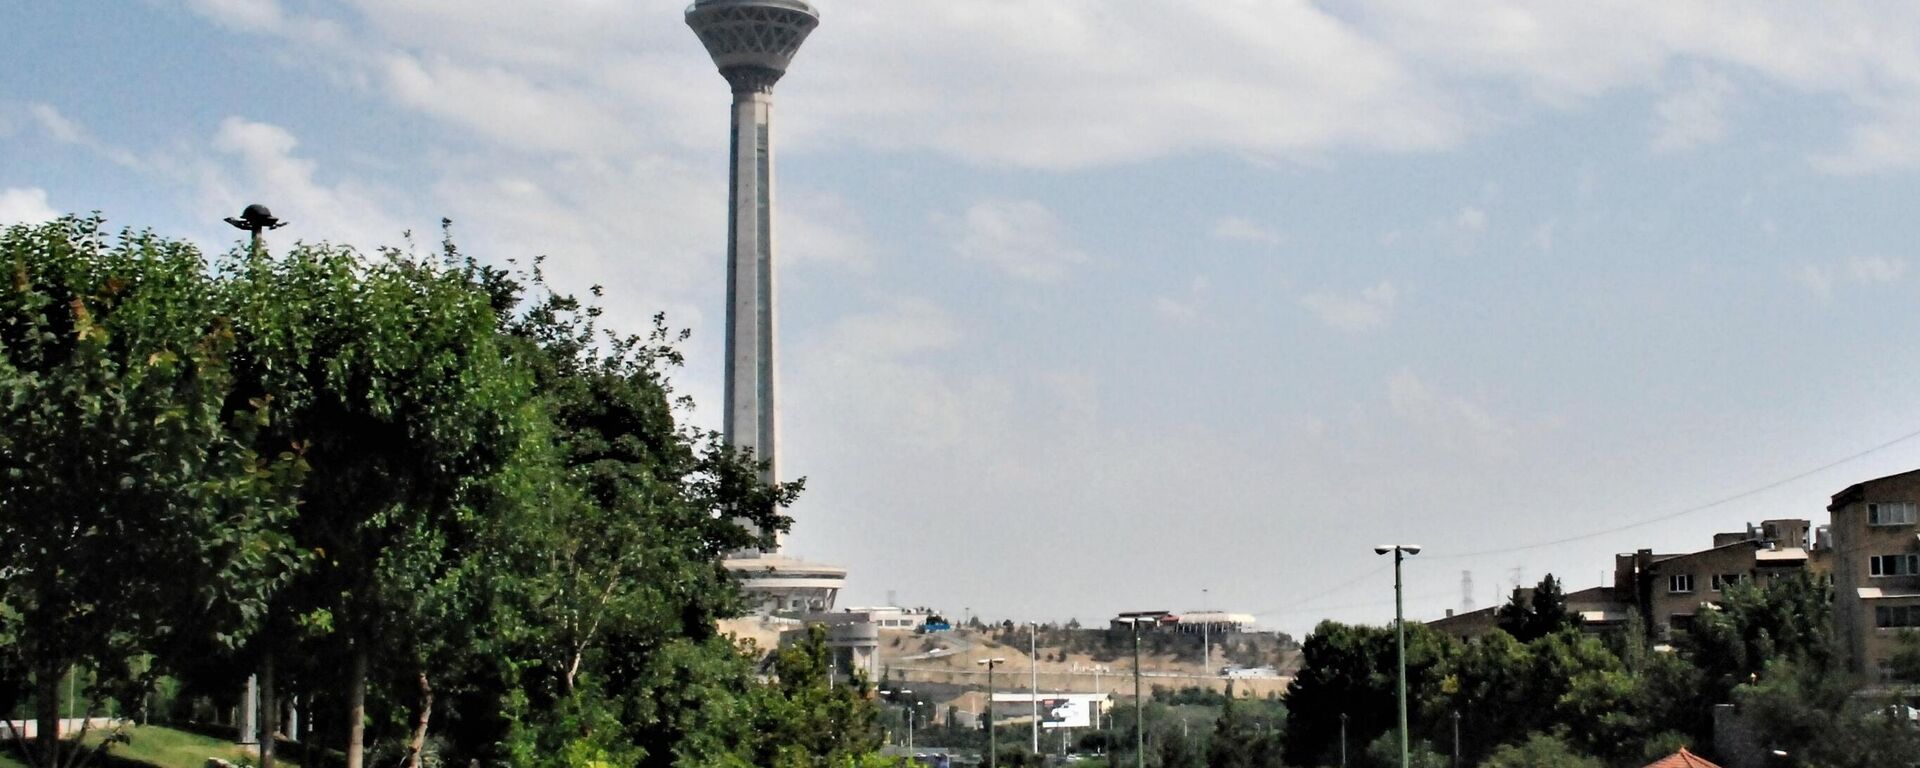 Башня Бордже Милад в Тегеране - Sputnik Аҧсны, 1920, 25.11.2021